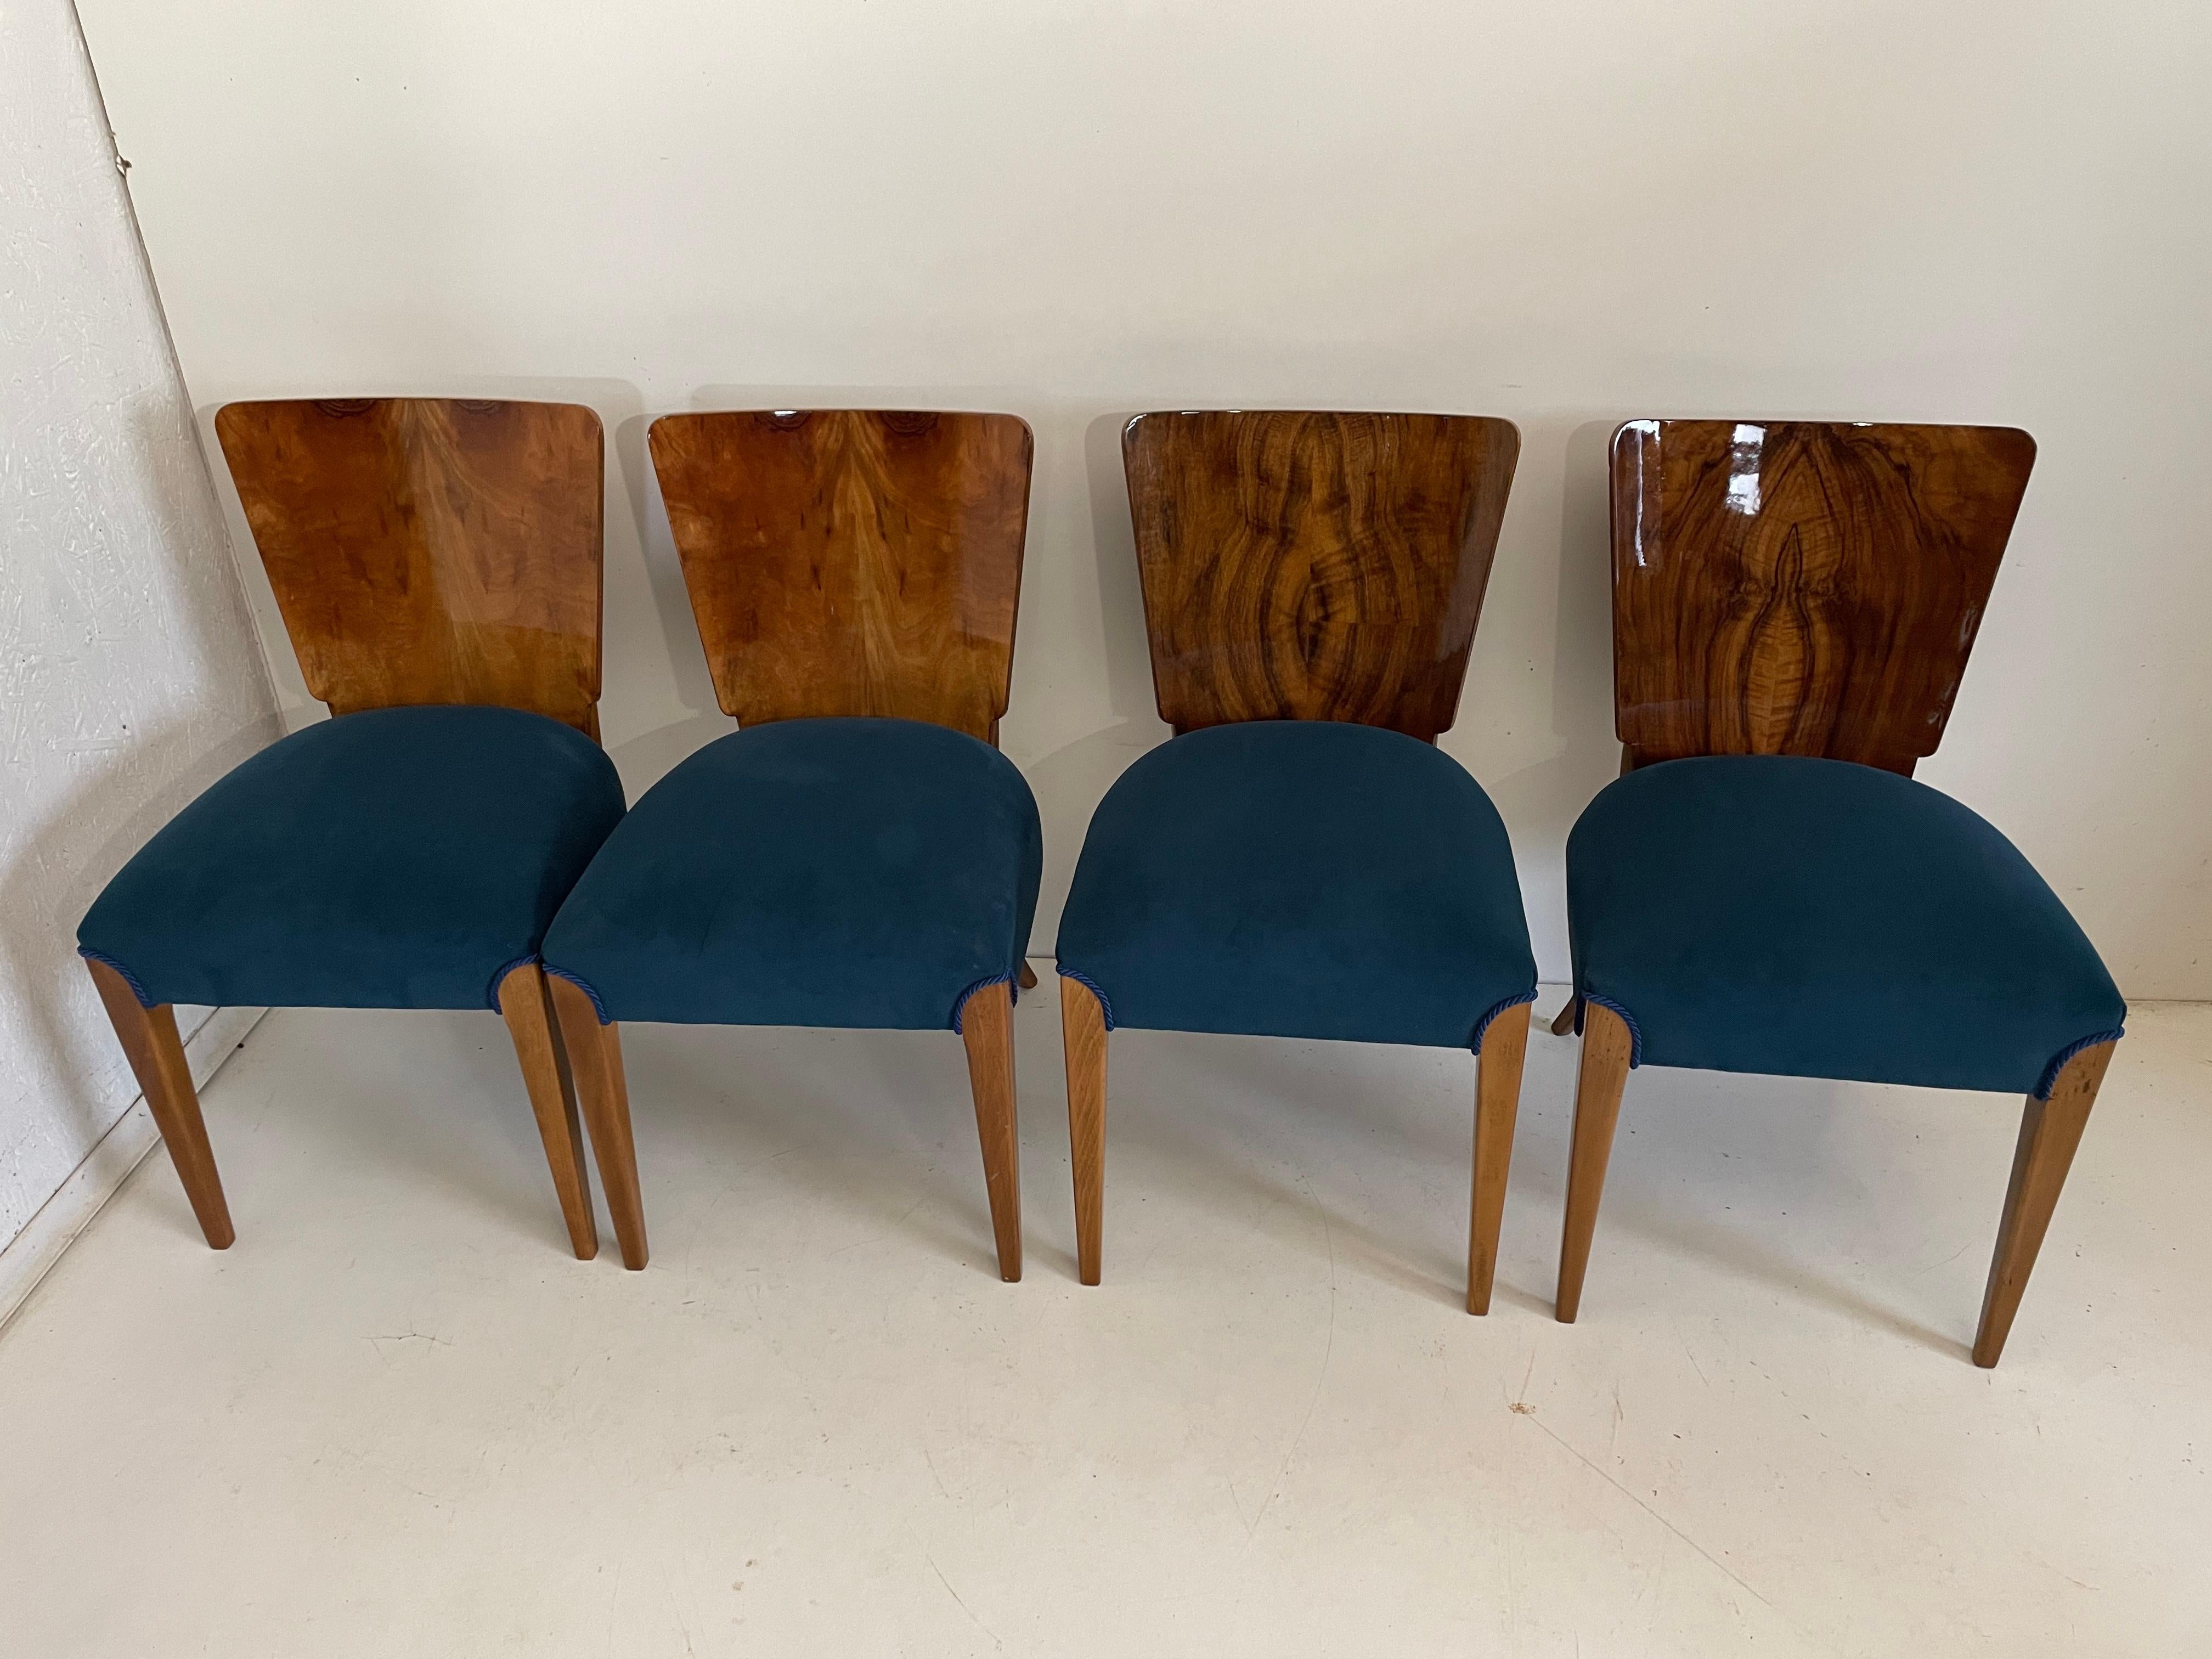 Art Déco quatre chaises par J. Halabala de 1940 nous présentons les chaises par J. Halabala des années 1940 (un designer tchèque classé parmi les créateurs les plus remarquables de la période moderne. L'apogée de sa carrière se situe dans les années